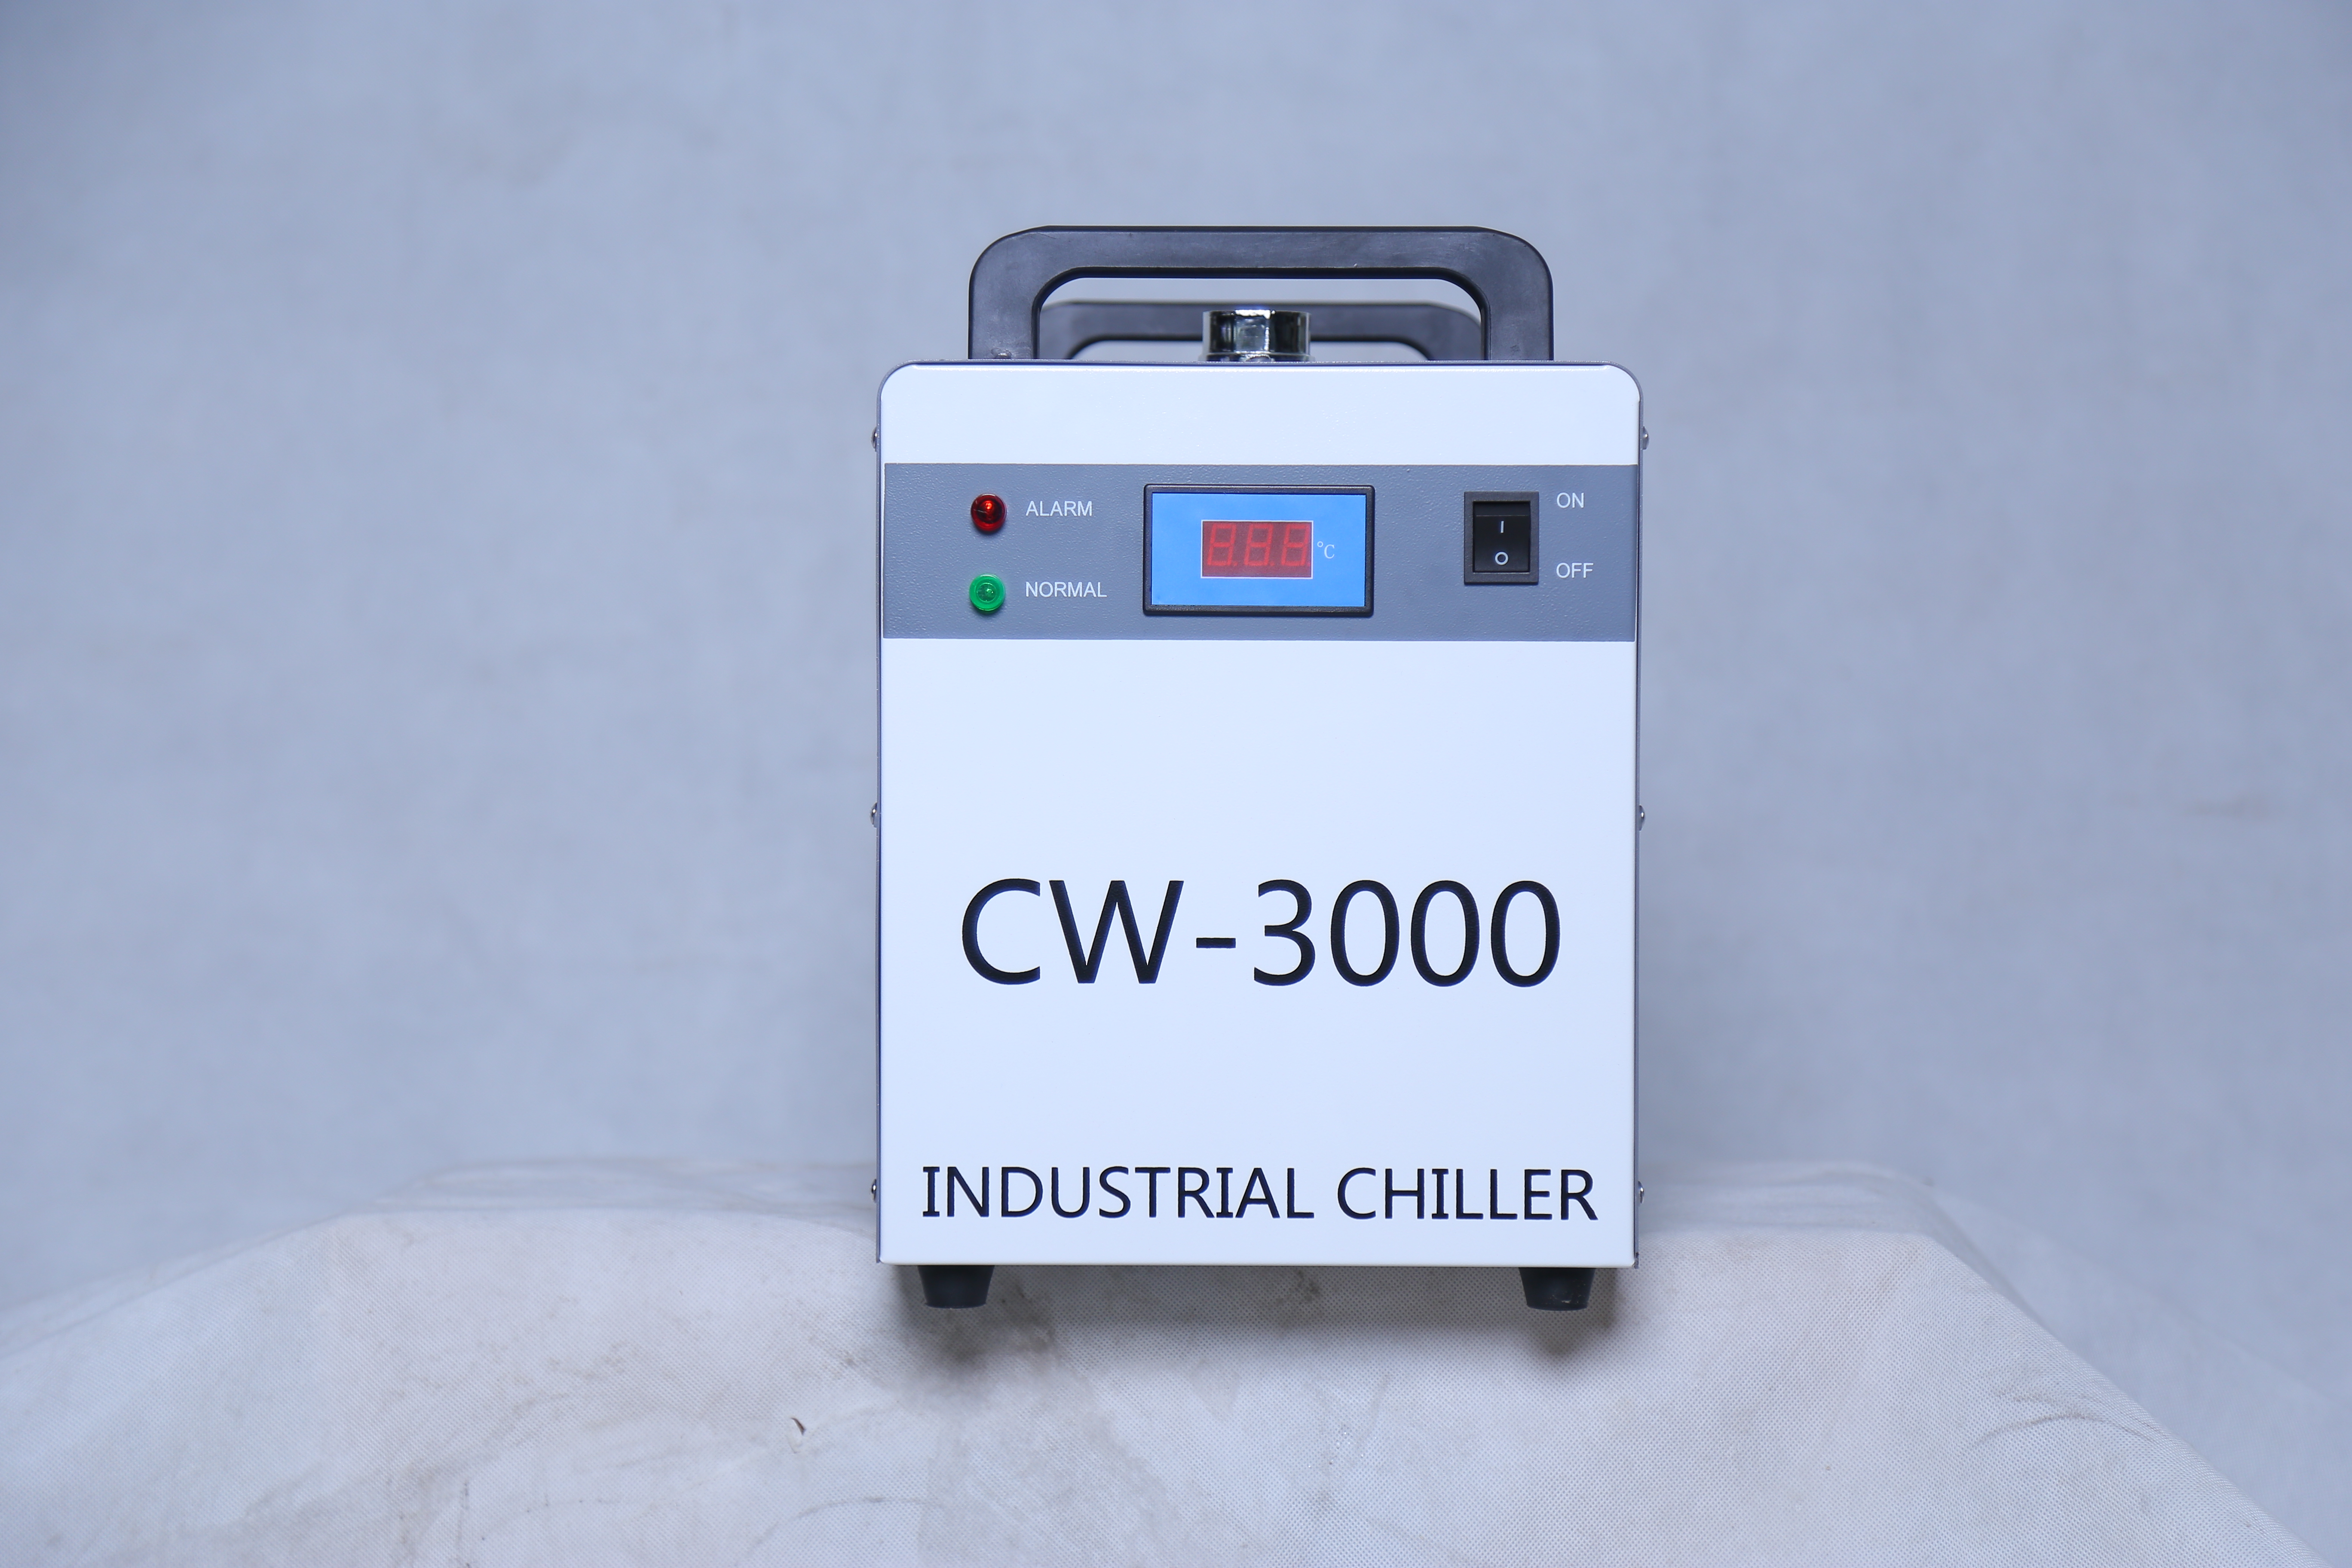 CW-3000